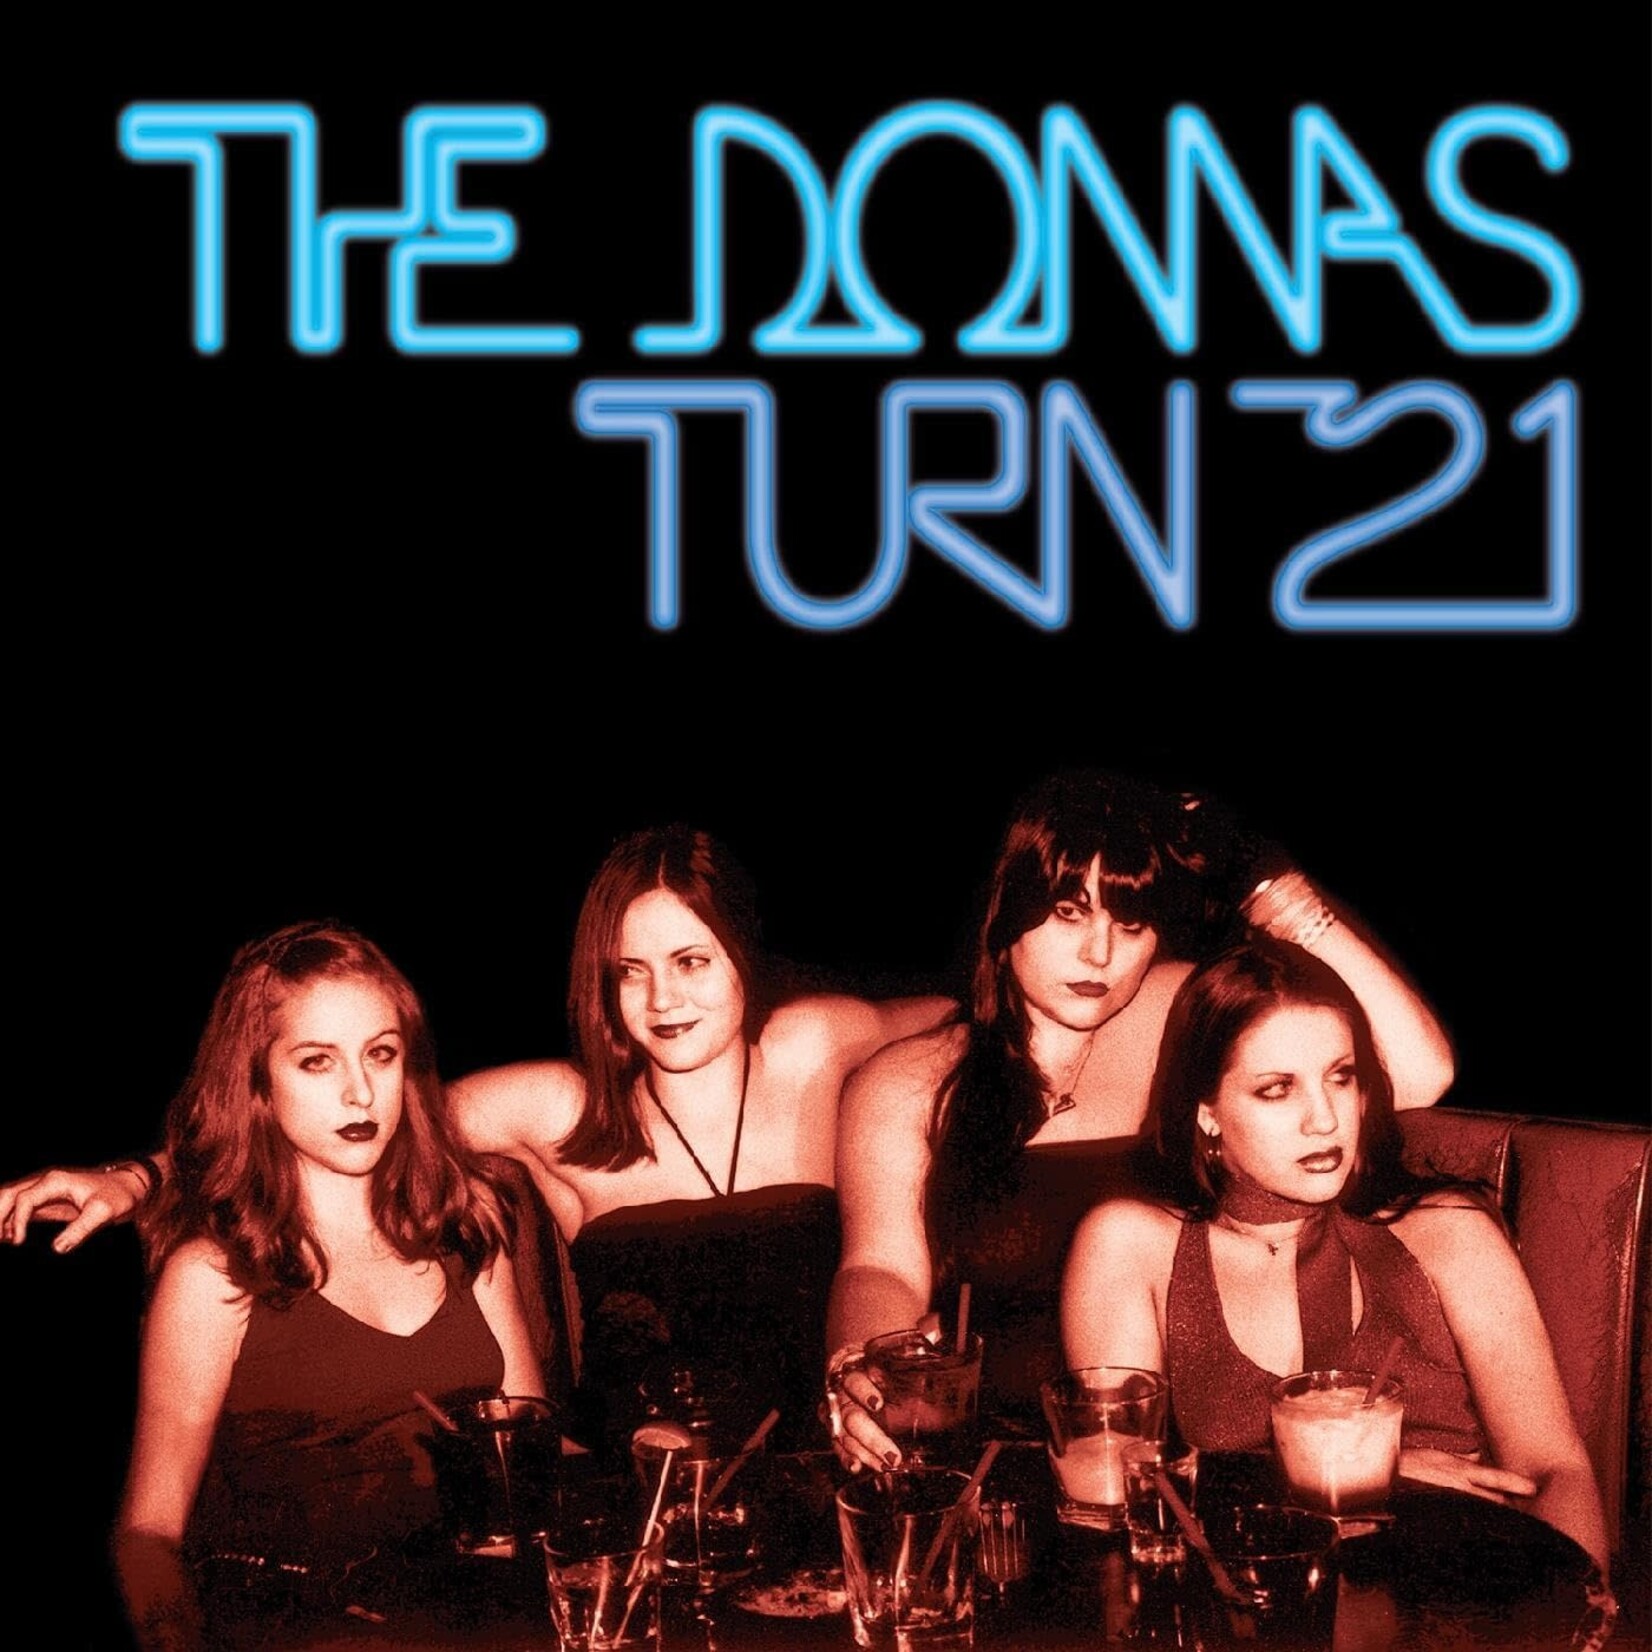 Vinyl The Donnas - Turn 21 (Blue Ice Queen Vinyl)